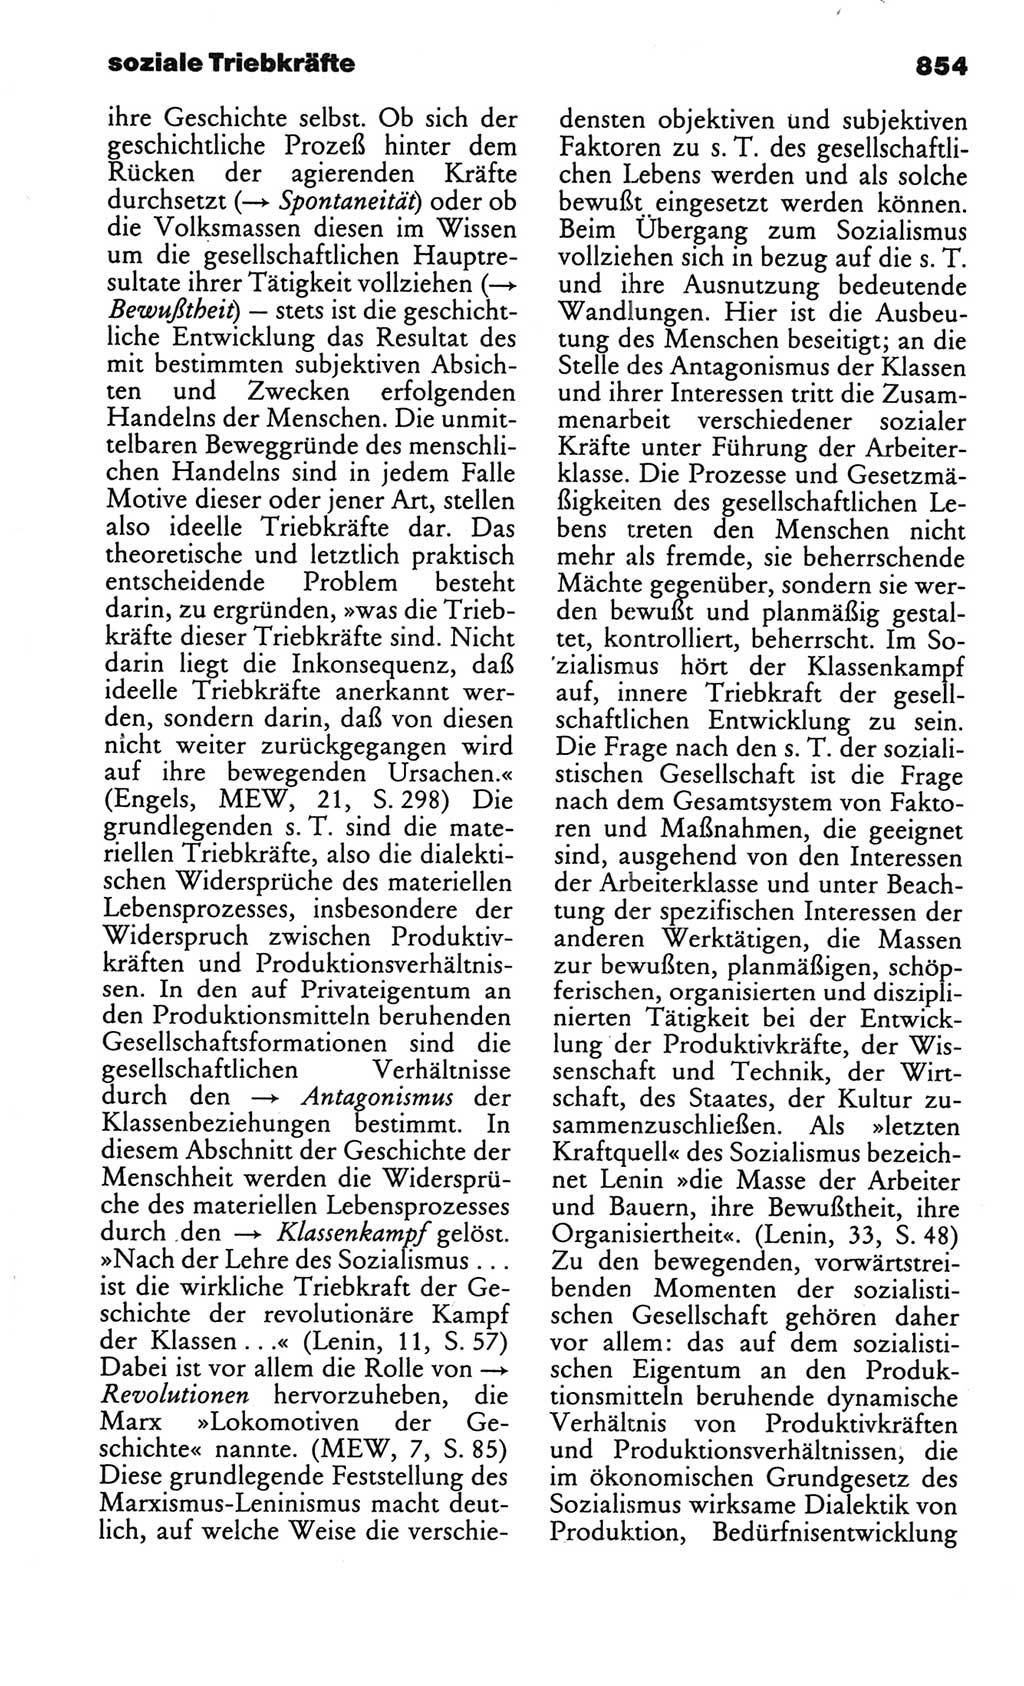 Kleines politisches Wörterbuch [Deutsche Demokratische Republik (DDR)] 1986, Seite 854 (Kl. pol. Wb. DDR 1986, S. 854)